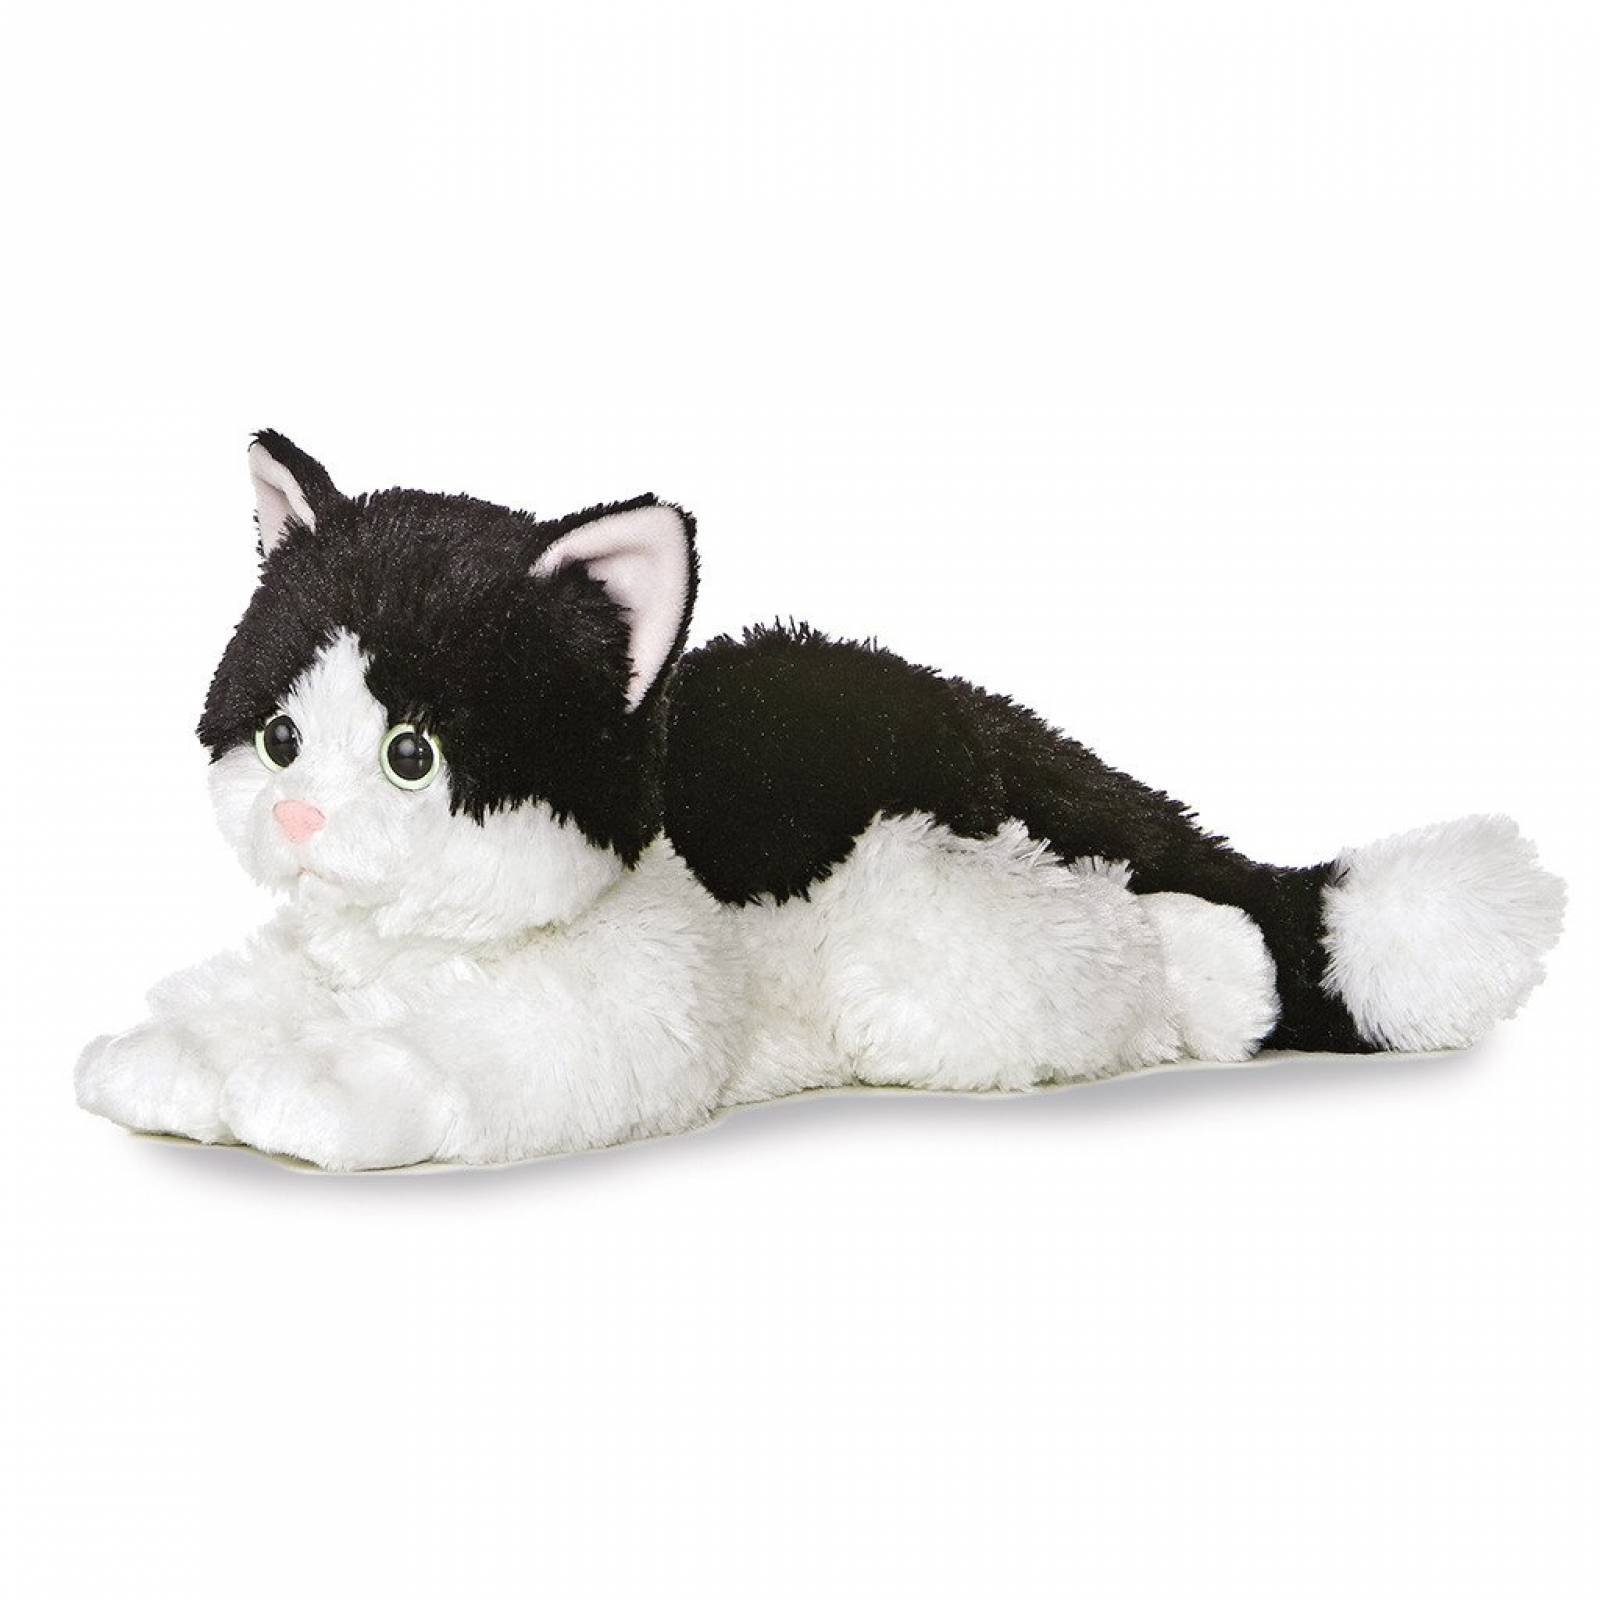 Peluche Flopsies - Oreo 30cm gato